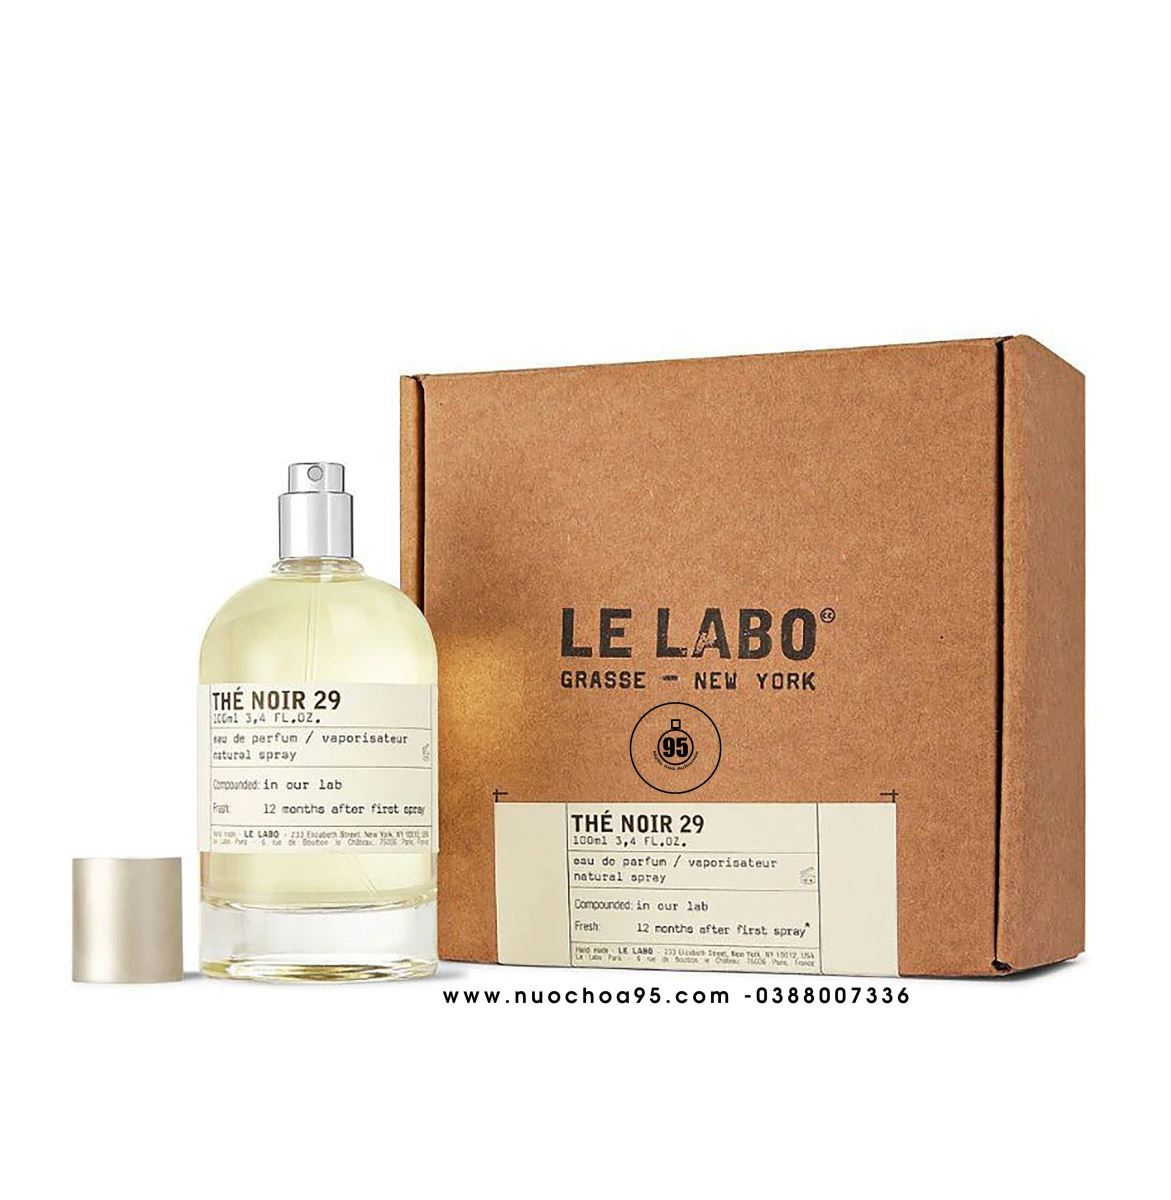 Le Labo Rose 31 Shampoo - Sản phẩm chăm sóc tóc đang HOT nhất hiện nay